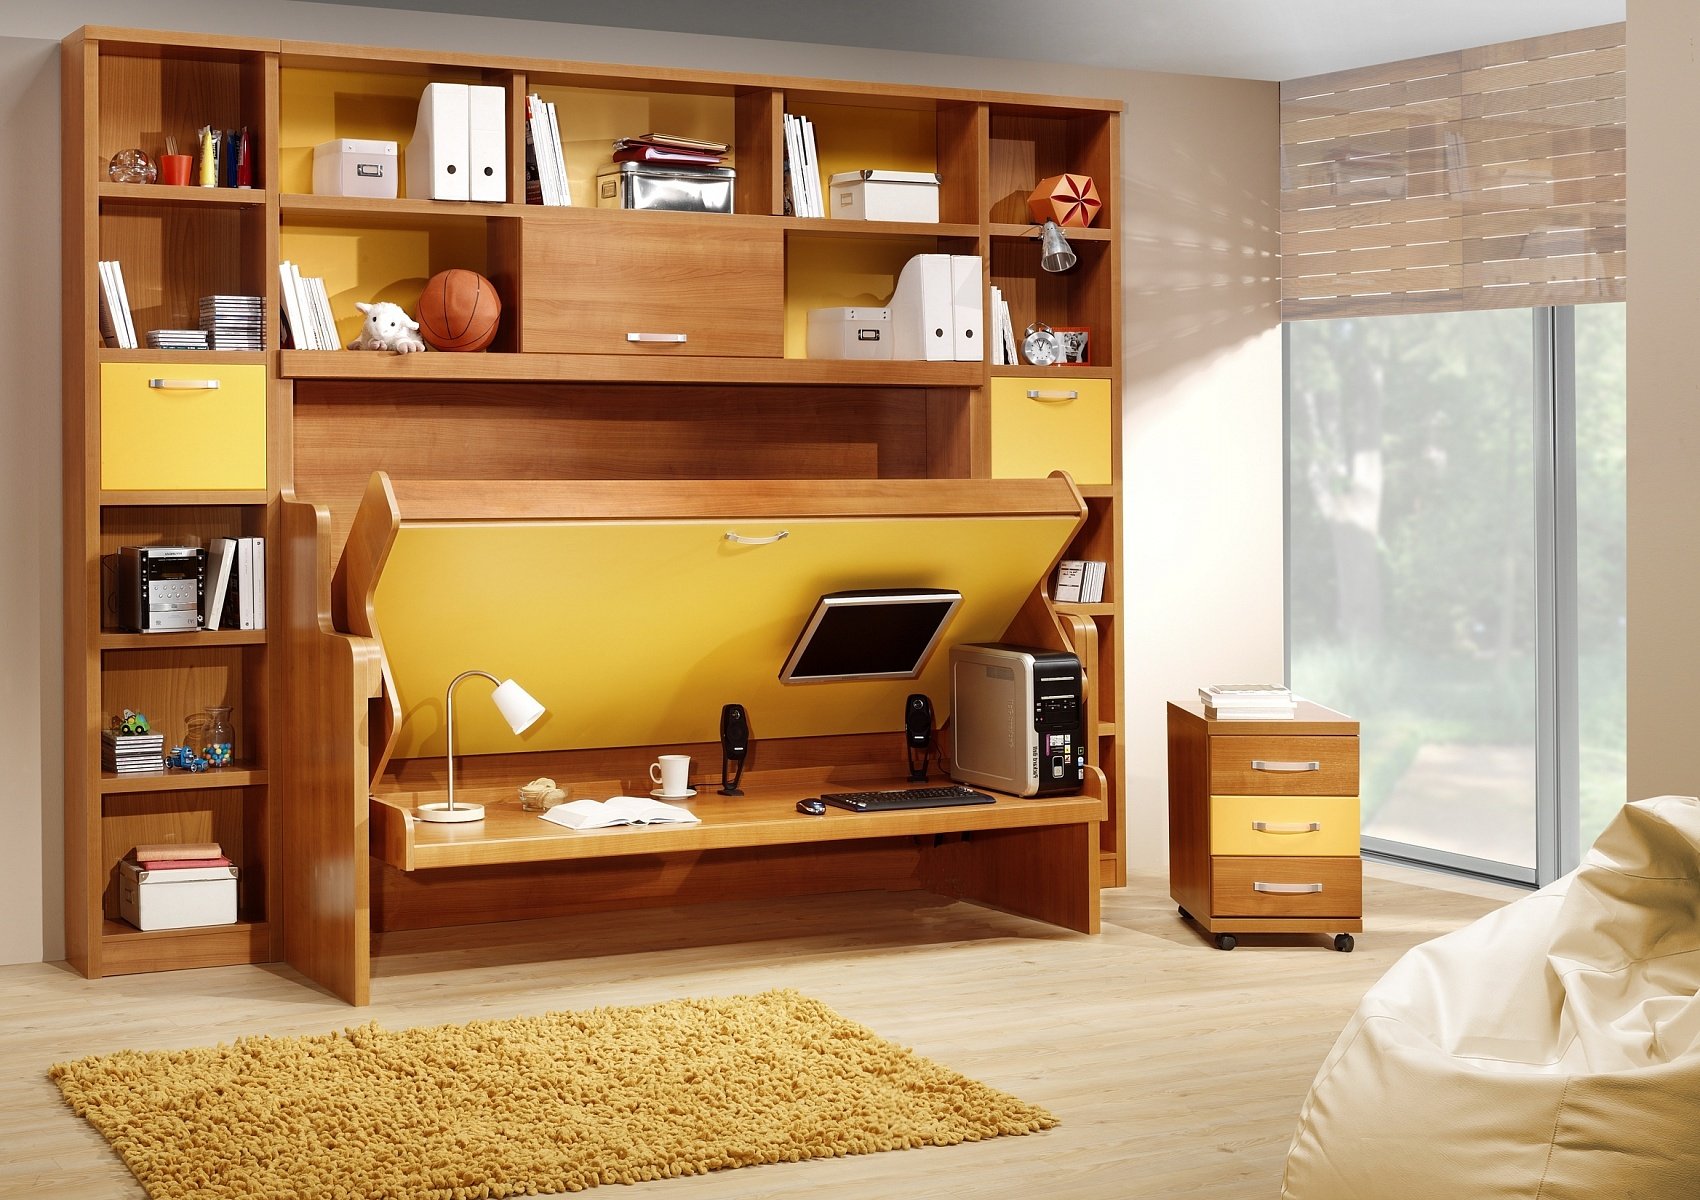 Складная мебель – современная тенденция для маленьких помещений